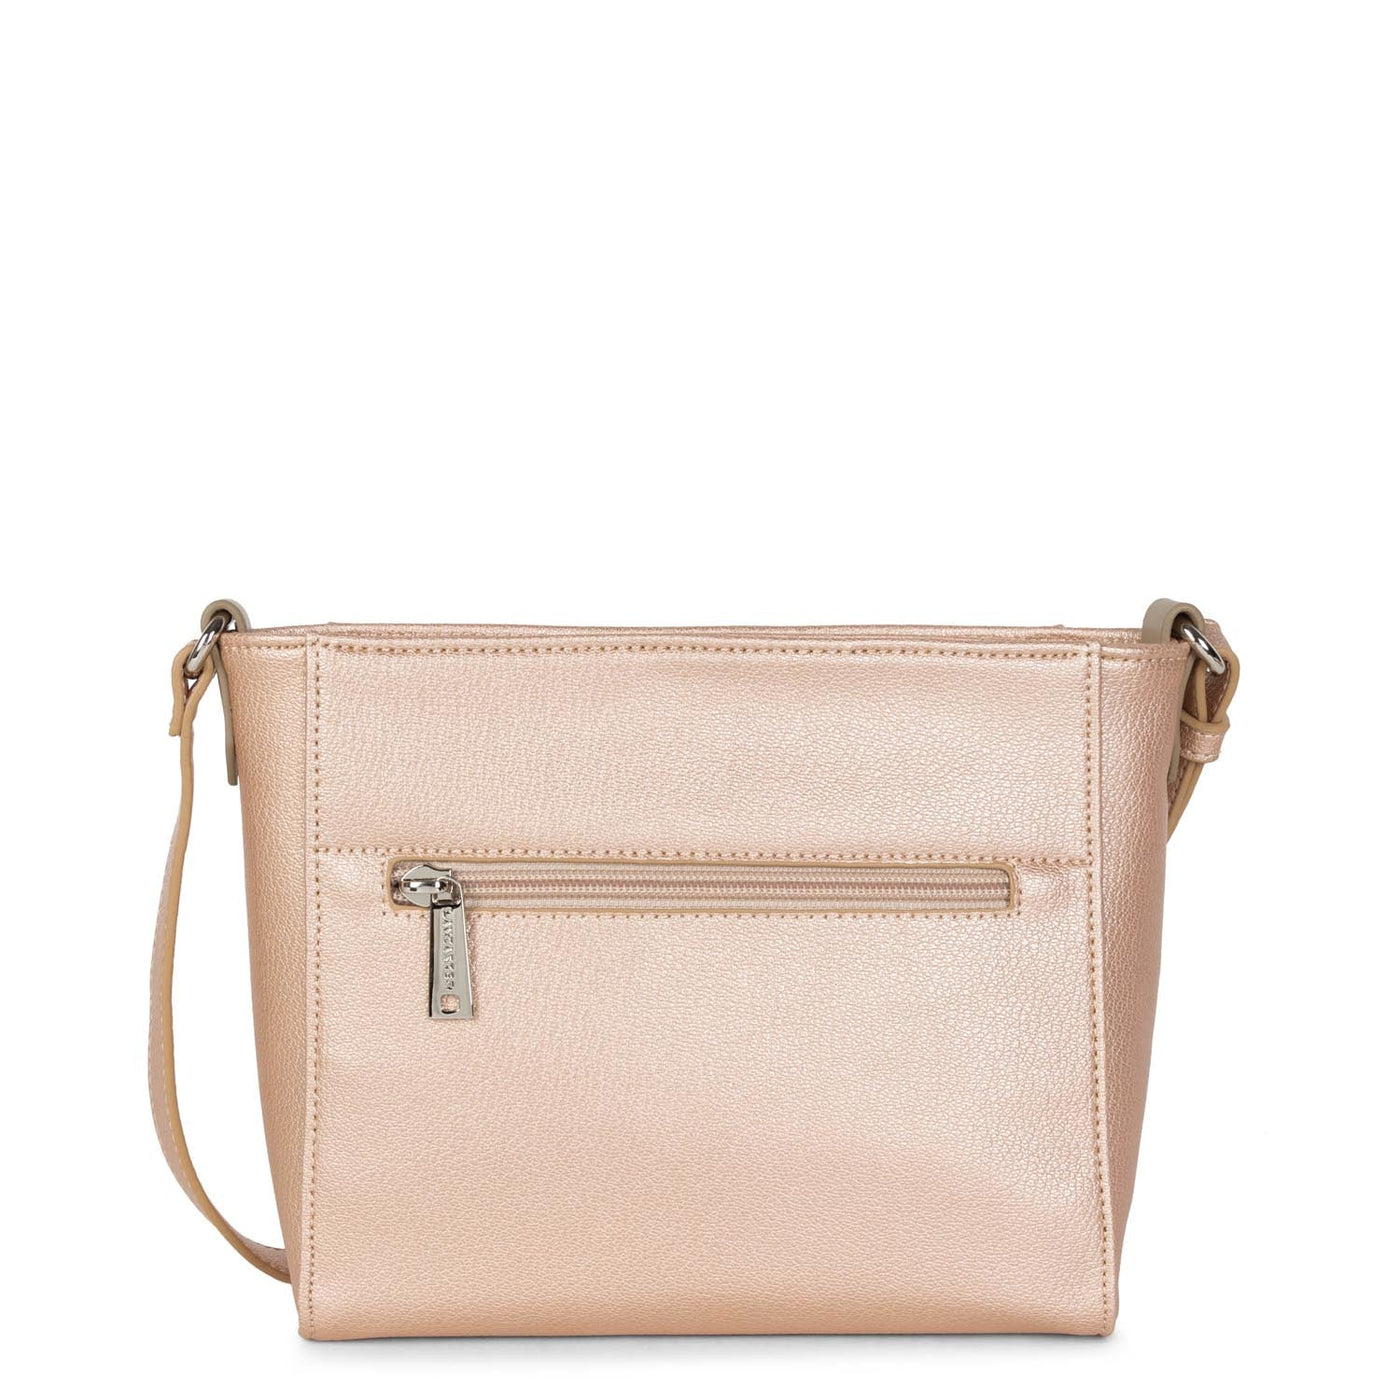 crossbody bag - maya #couleur_rose-nacre-rose-nude